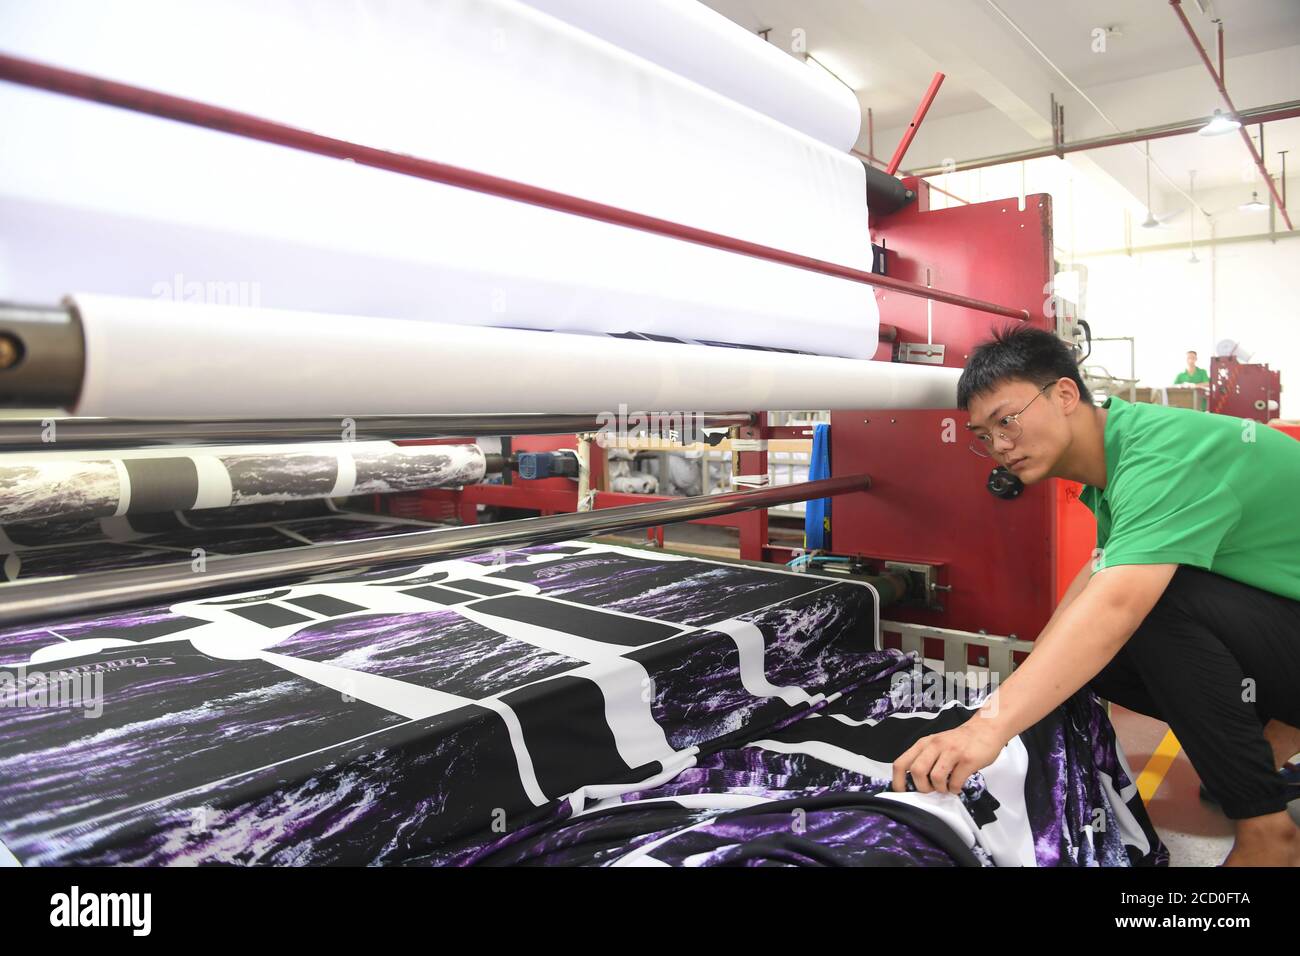 Shishi, provincia de Fujian en China. 25 de agosto de 2020. Un trabajador opera una máquina para imprimir patrones en ropa en una compañía de ropa en Shishi, sureste de la provincia de Fujian, 25 de agosto de 2020. Las autoridades locales de Shishi, donde se encuentran muchas empresas textiles, han llevado a cabo algunas políticas favorables para ayudar a reducir el costo y ayudar a las empresas a ajustar las estrategias de producción y comercialización. La capacidad de producción de las empresas textiles ha mejorado considerablemente. Crédito: Canción Weiwei/Xinhua/Alamy Live News Foto de stock